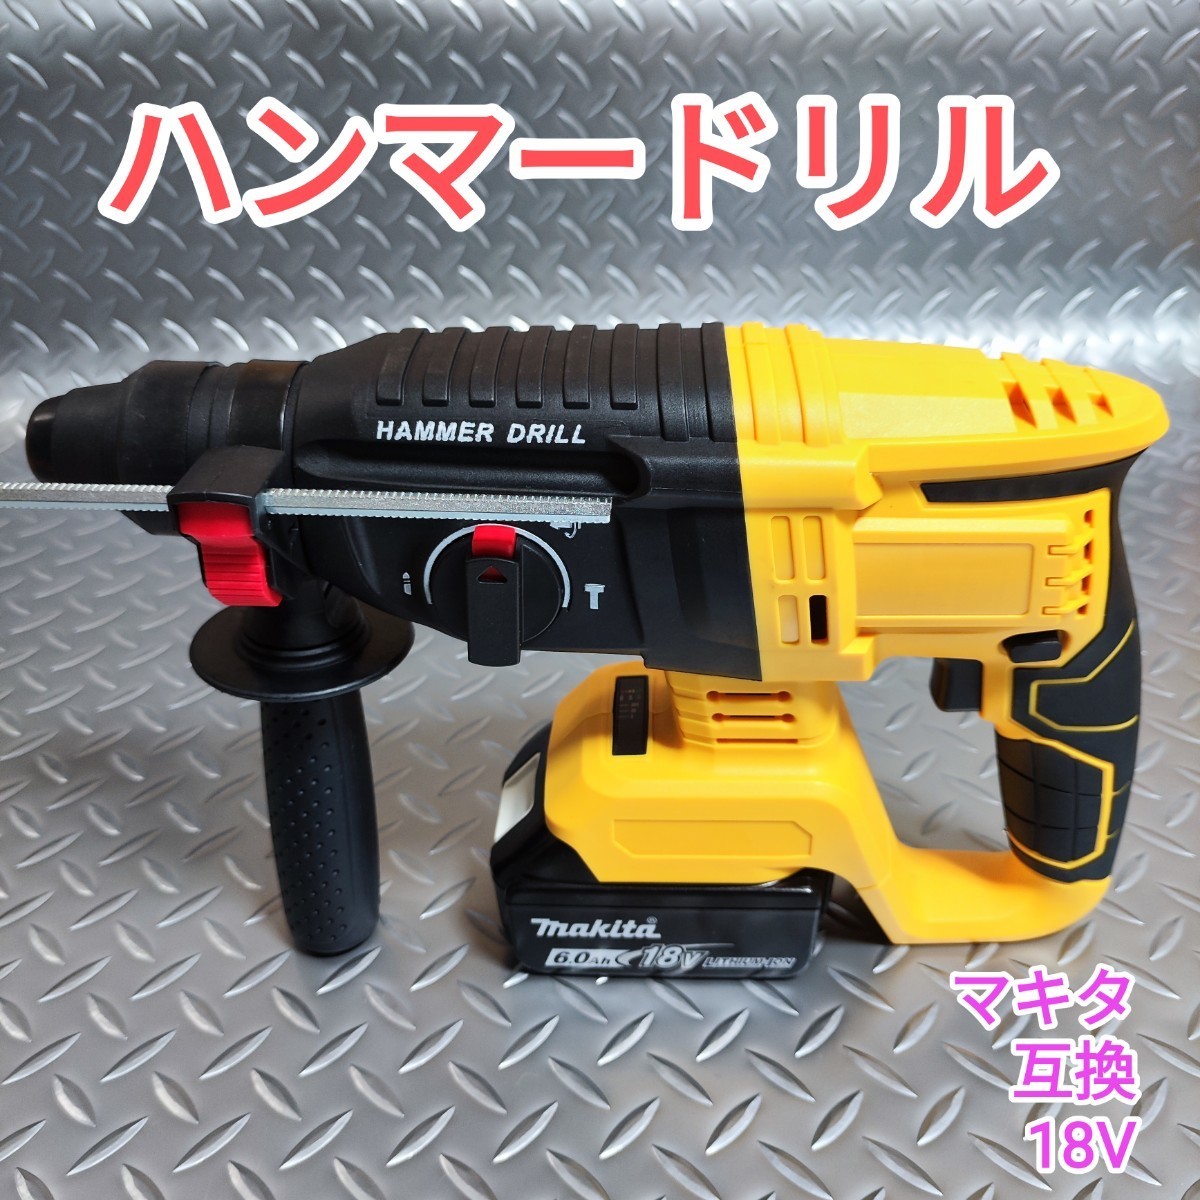 【黄色】ハンマードリル マキタ 互換品 18V はつり 電動ハンマー_画像1